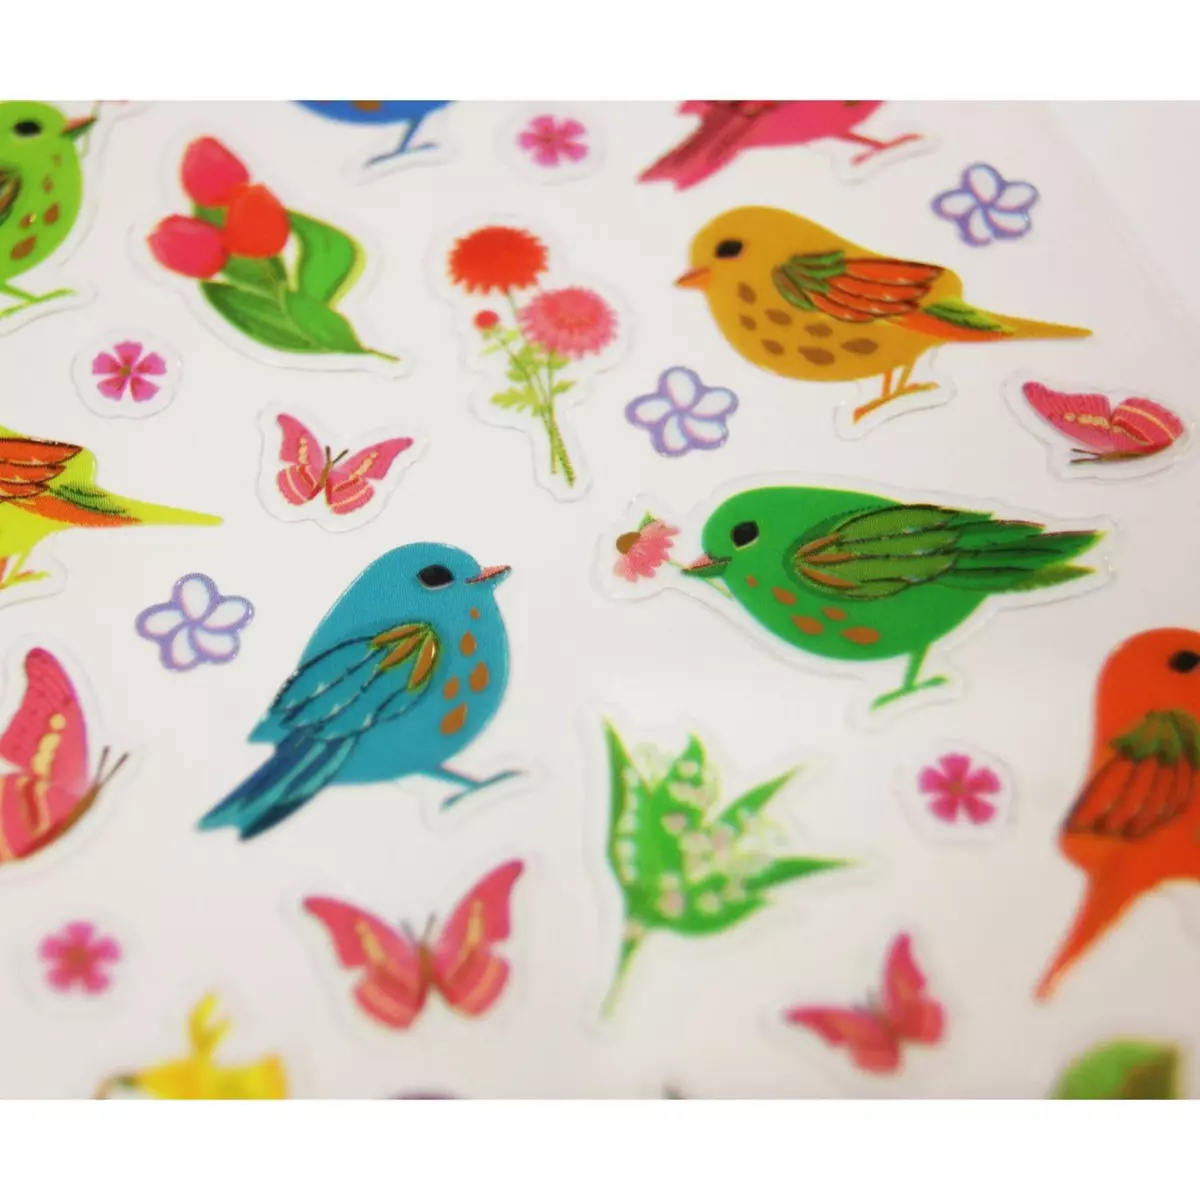  Stickers Oiseaux et fleurs - Paillettes - 7,5 x 10 cm